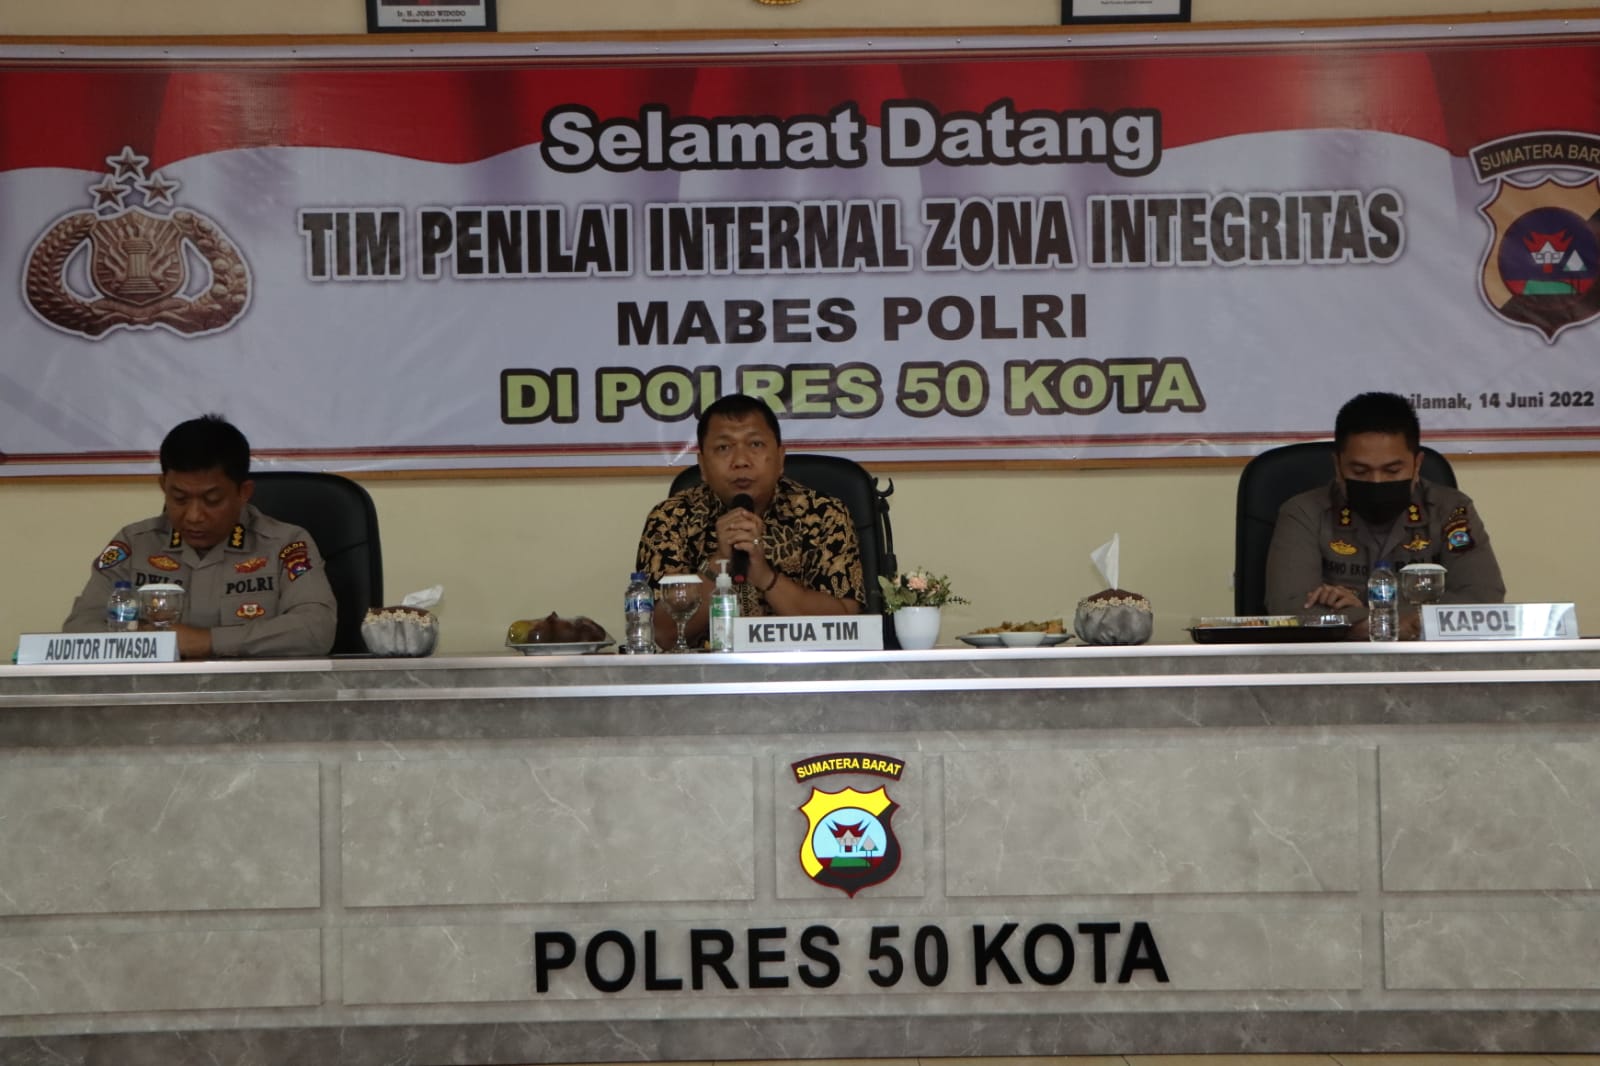 Kunjungan Tim Penilai Internal Zona Integritas Mabes Polri di Polres 50 Kota